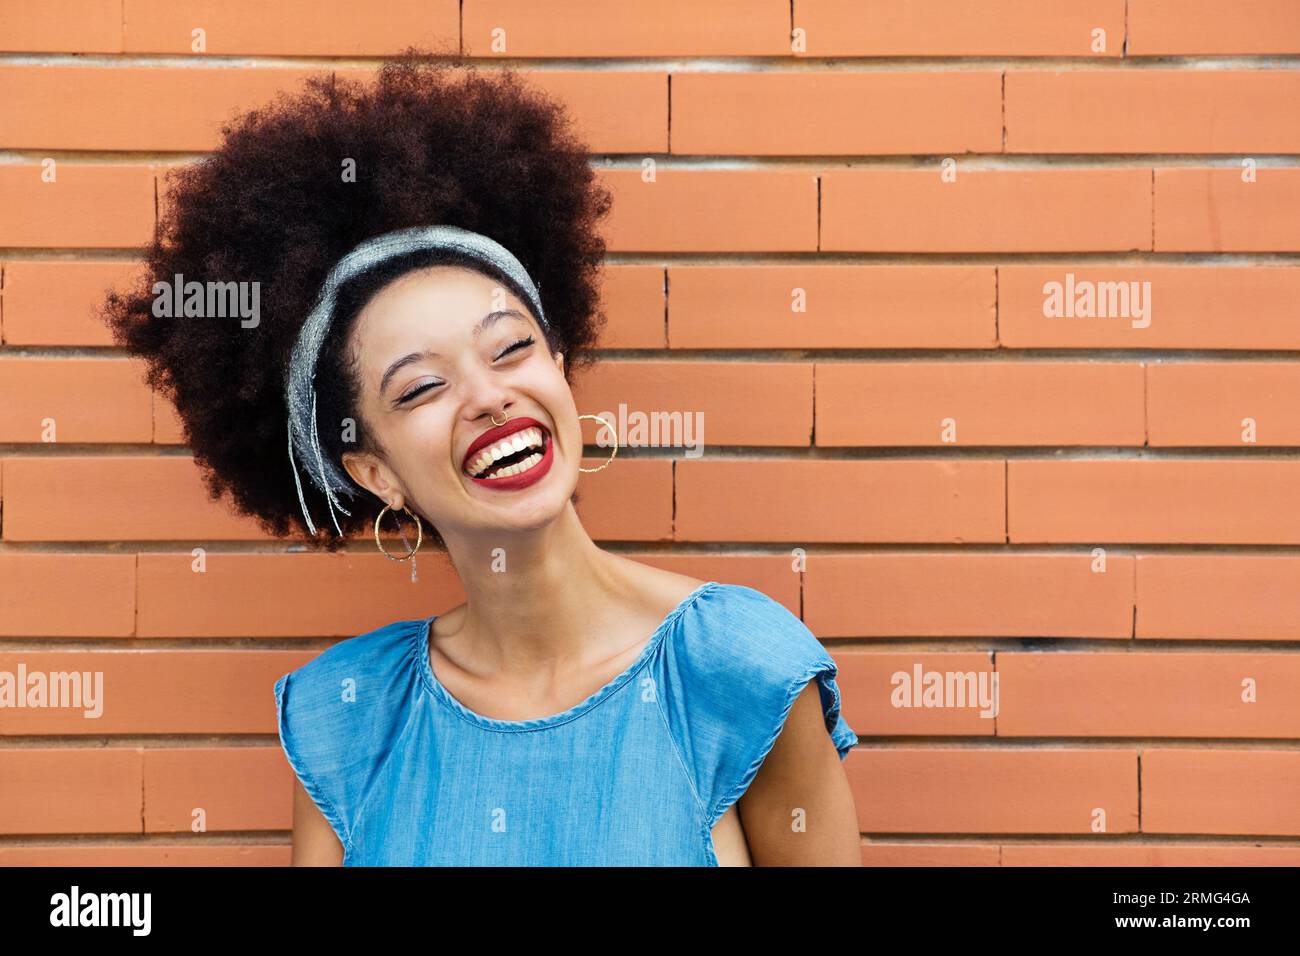 Giovane donna afro-americana positiva con fascia per capelli afro labbra rosse che sorride e guarda lontano mentre si trova da sola contro la costruzione di mattoni marroni Foto Stock